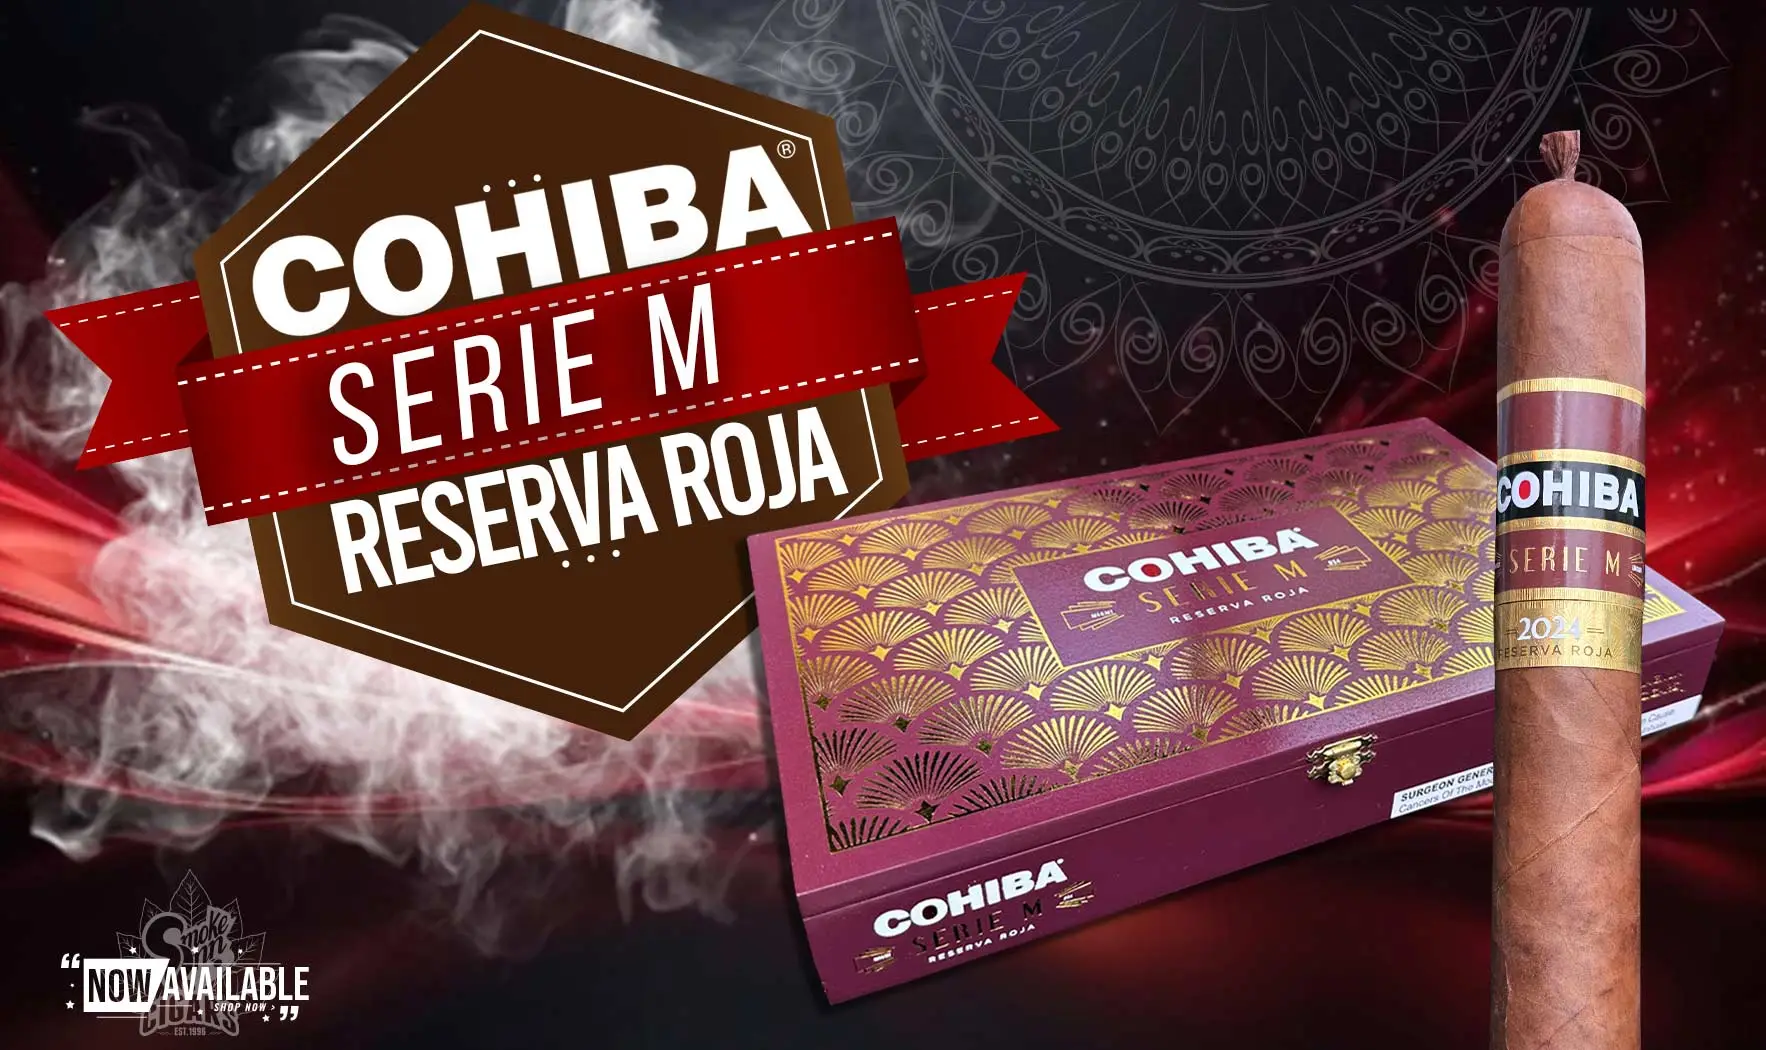 Cohiba Serie M Reserva Roja